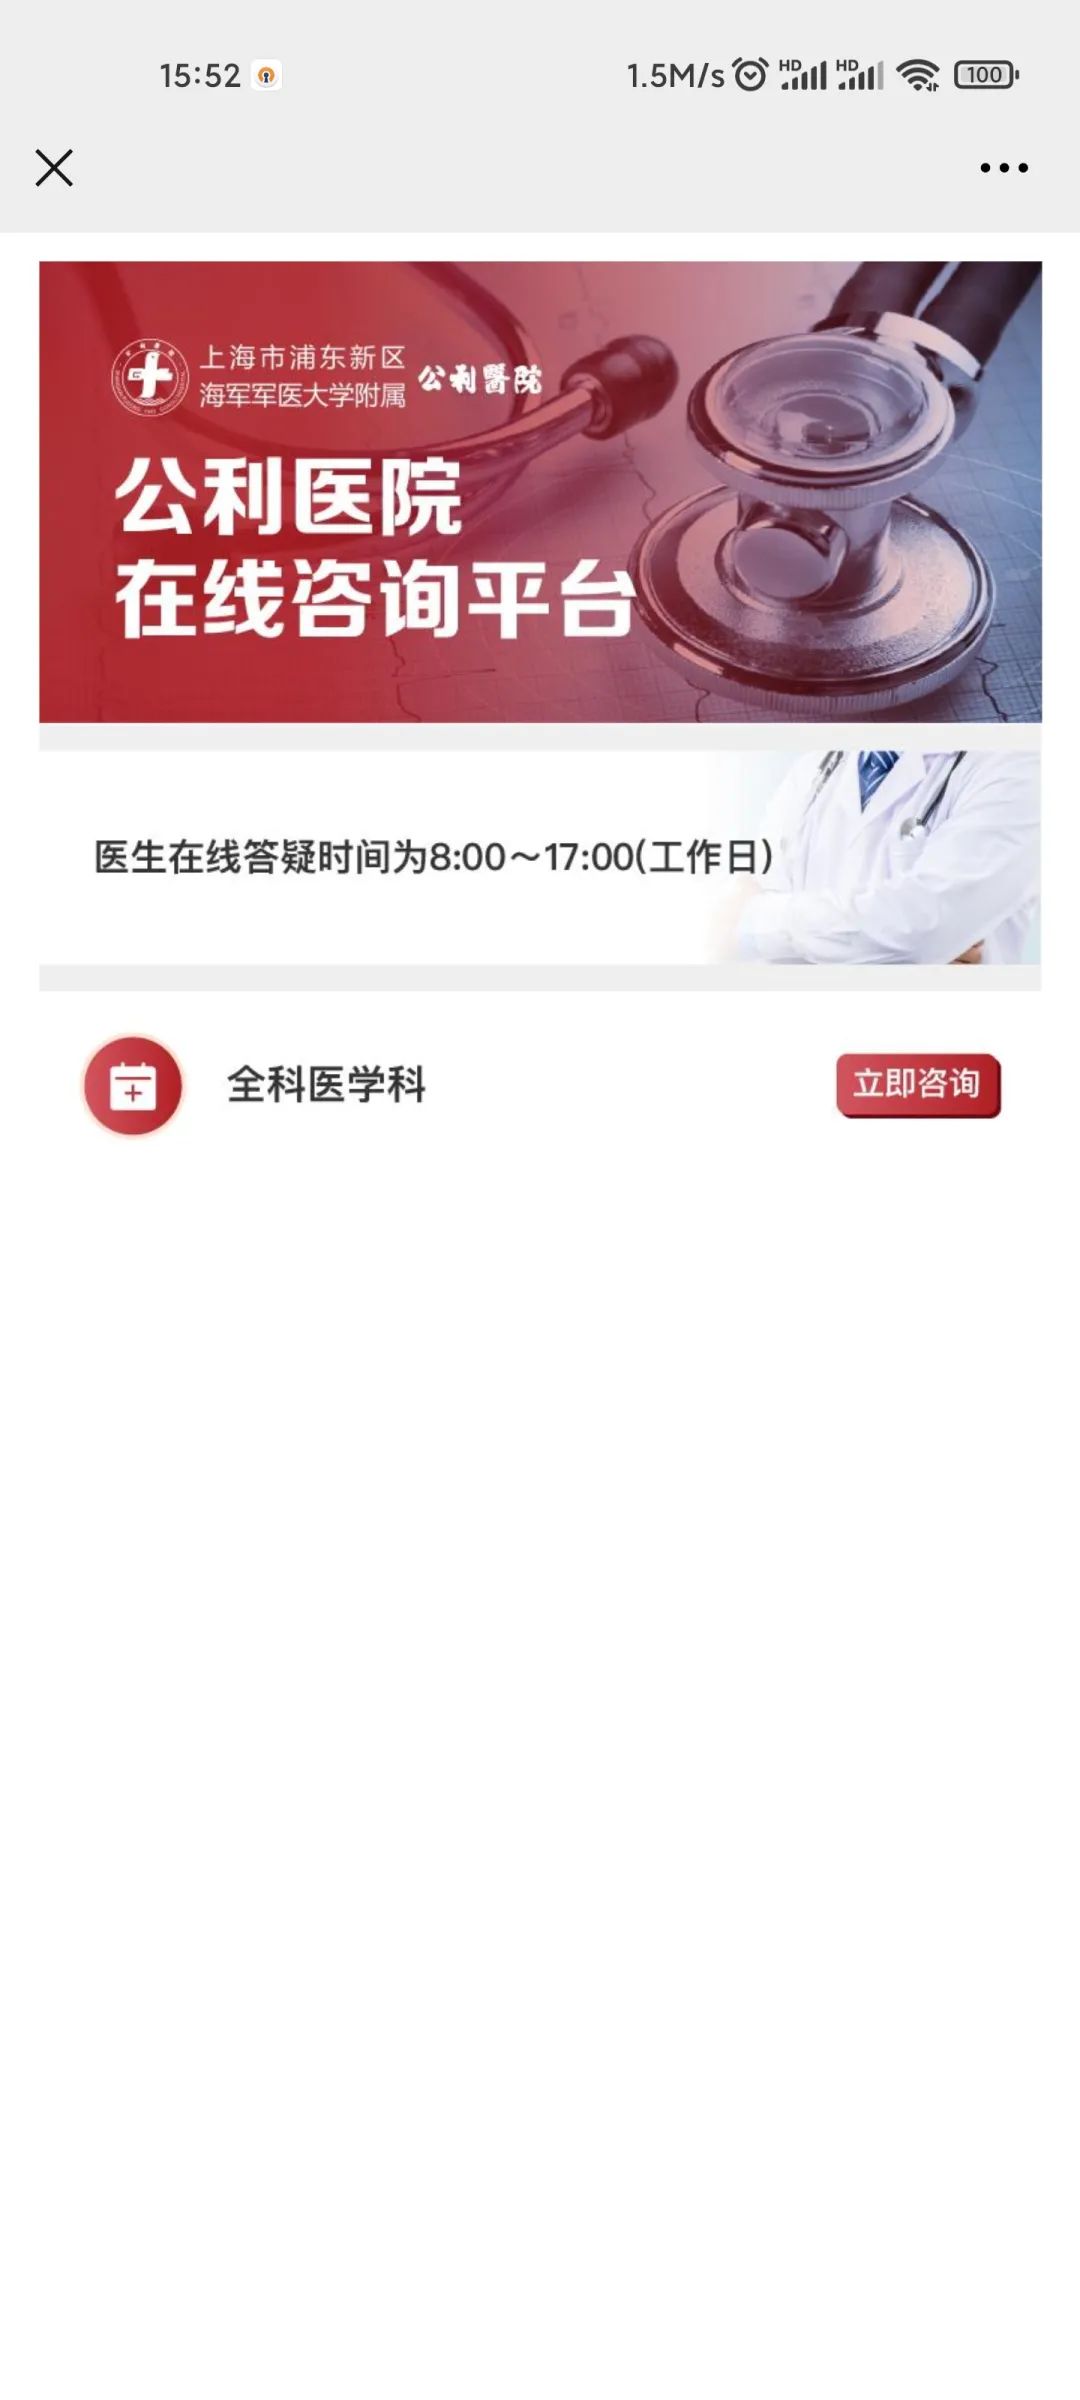 互联网医院系统_北京汉达尔的\"社区居家养老物联网\"系统_视频监控联网系统